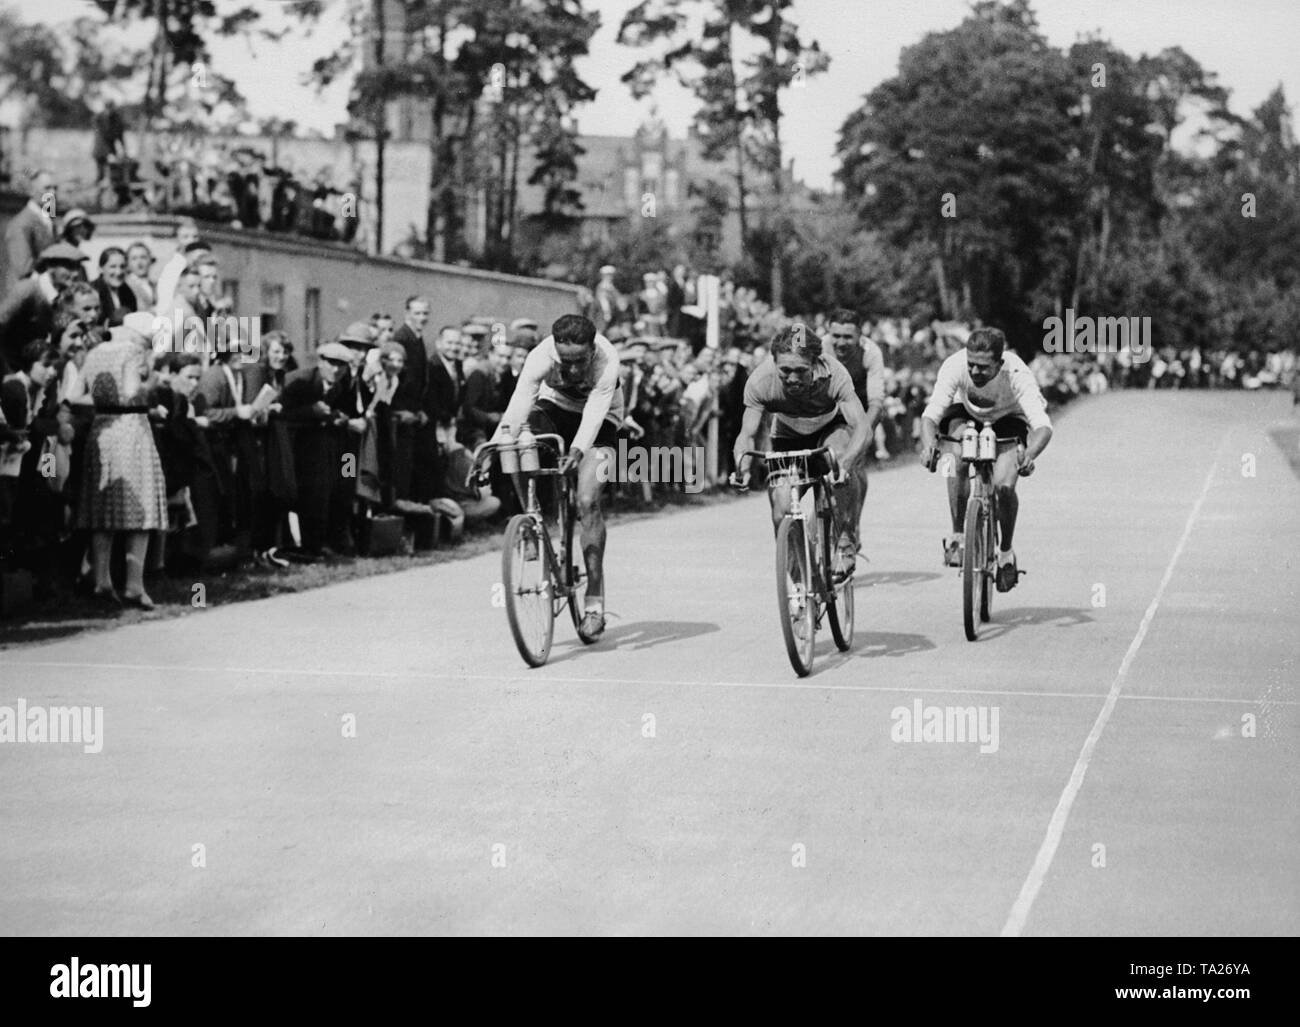 La finale de la course cycliste pour amateurs 'Rund um Berlin' ('autour de Berlin') au stade de Wannsee le 16 août, 1931. Banque D'Images